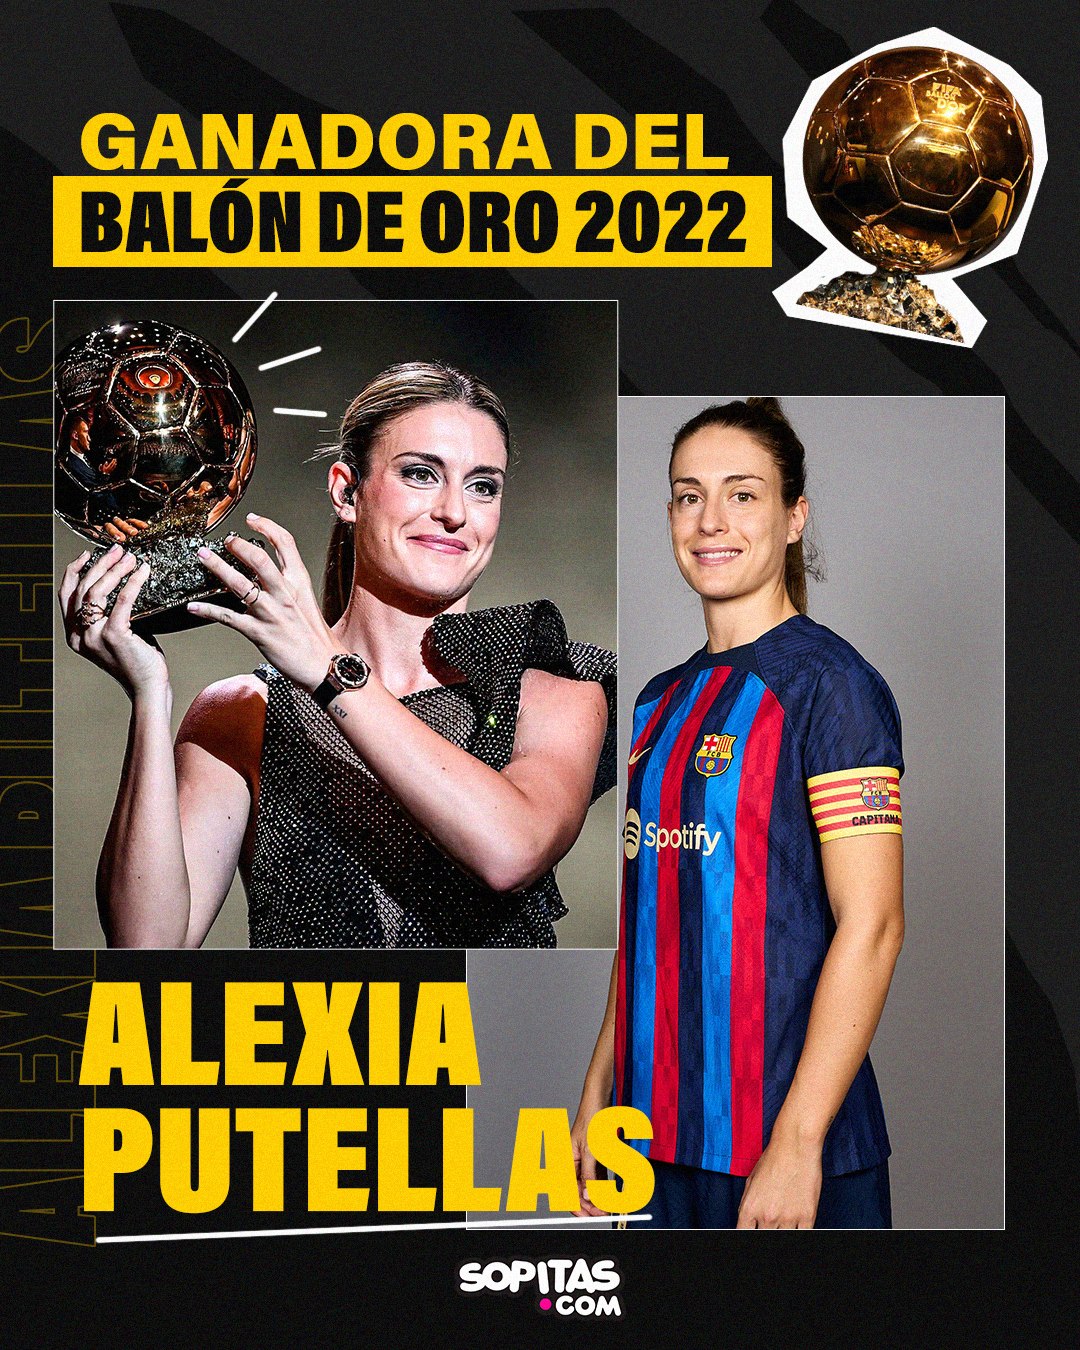 balon_oro_2022_ganadora Alexia Putellas